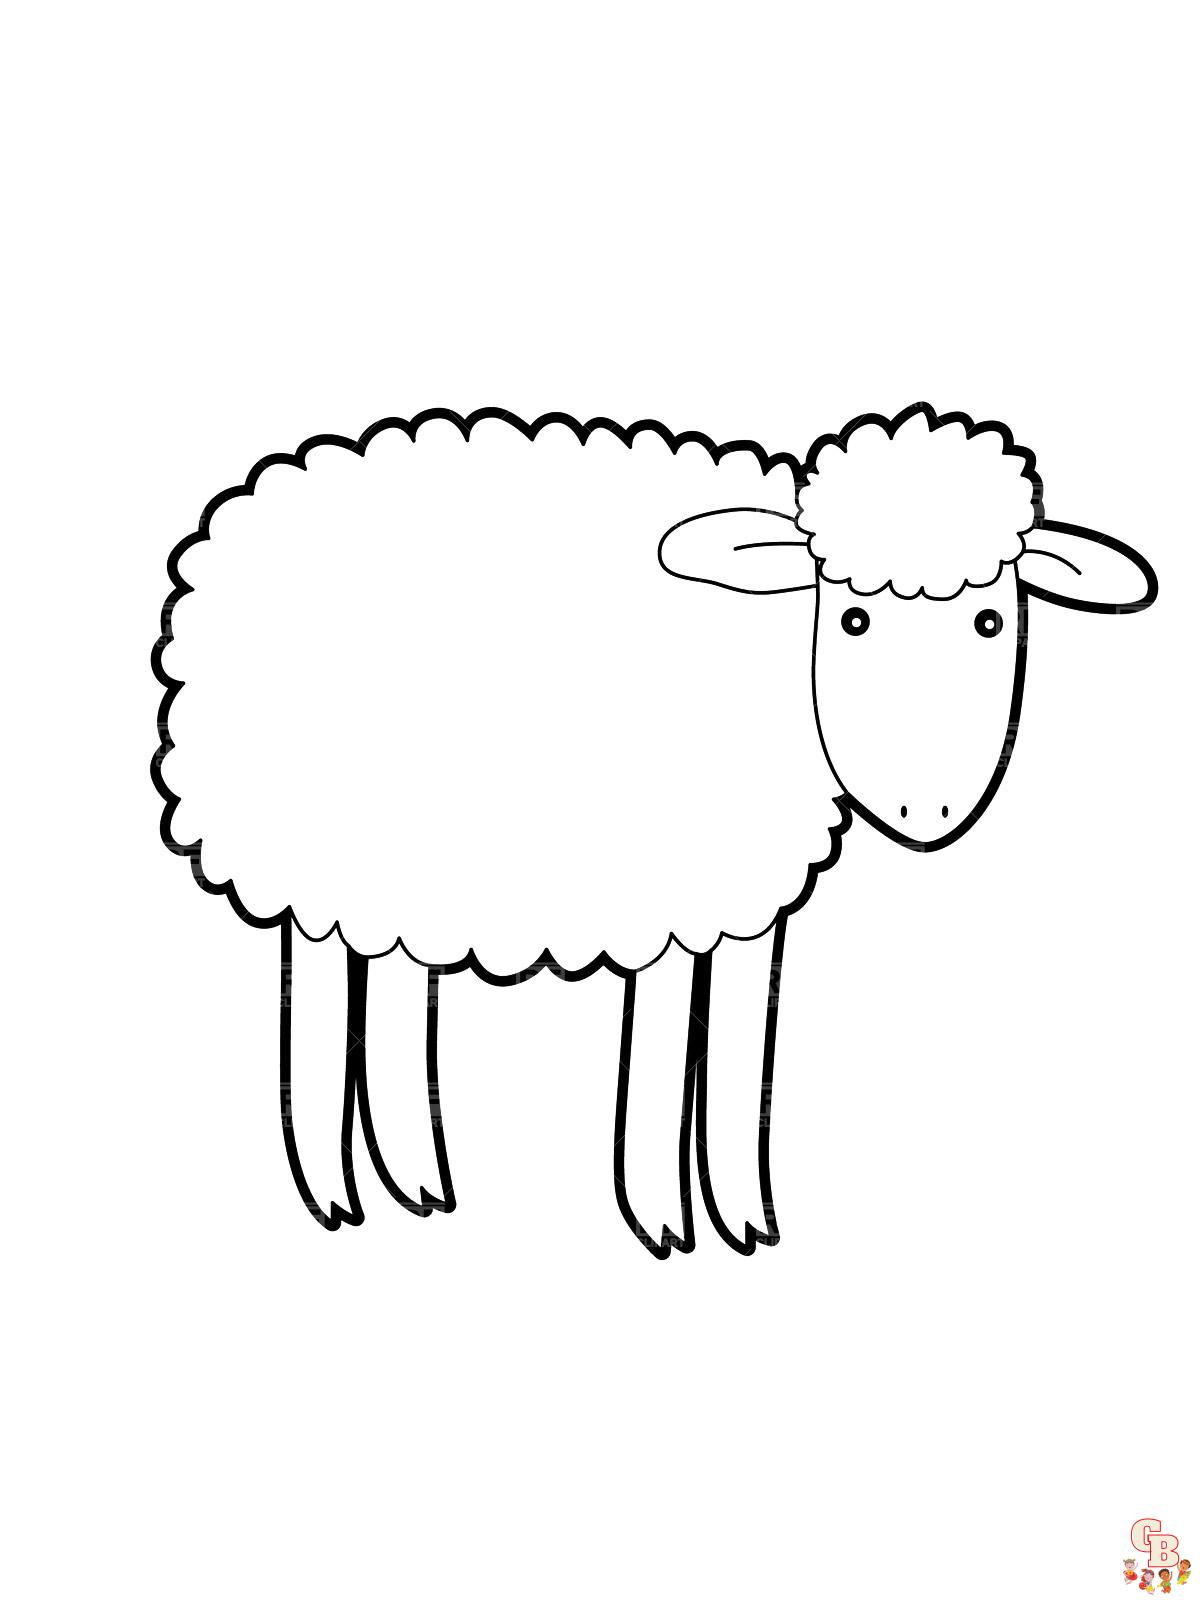 coloração de ovelhas